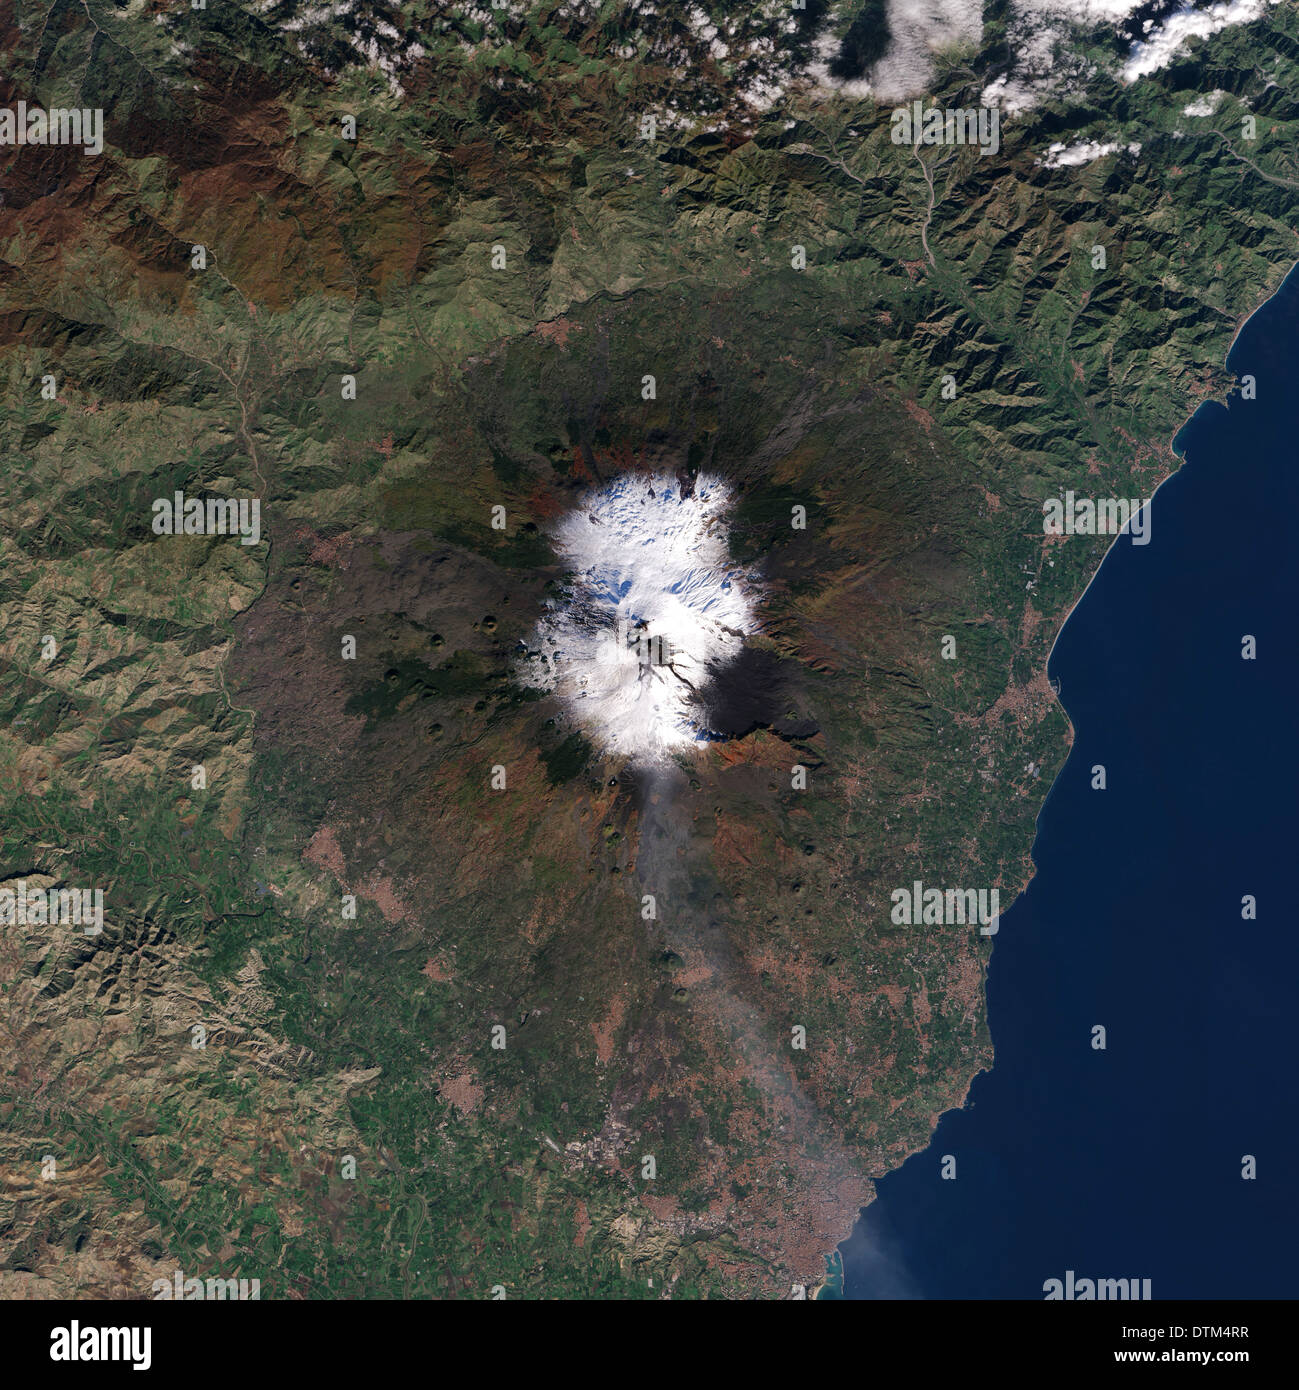 Ríos de lava negra serpiente sobre la blanca, la nieve de las laderas del Monte Etna en esta imagen de satélite en color natural. Dec.13, 2013 Foto de stock